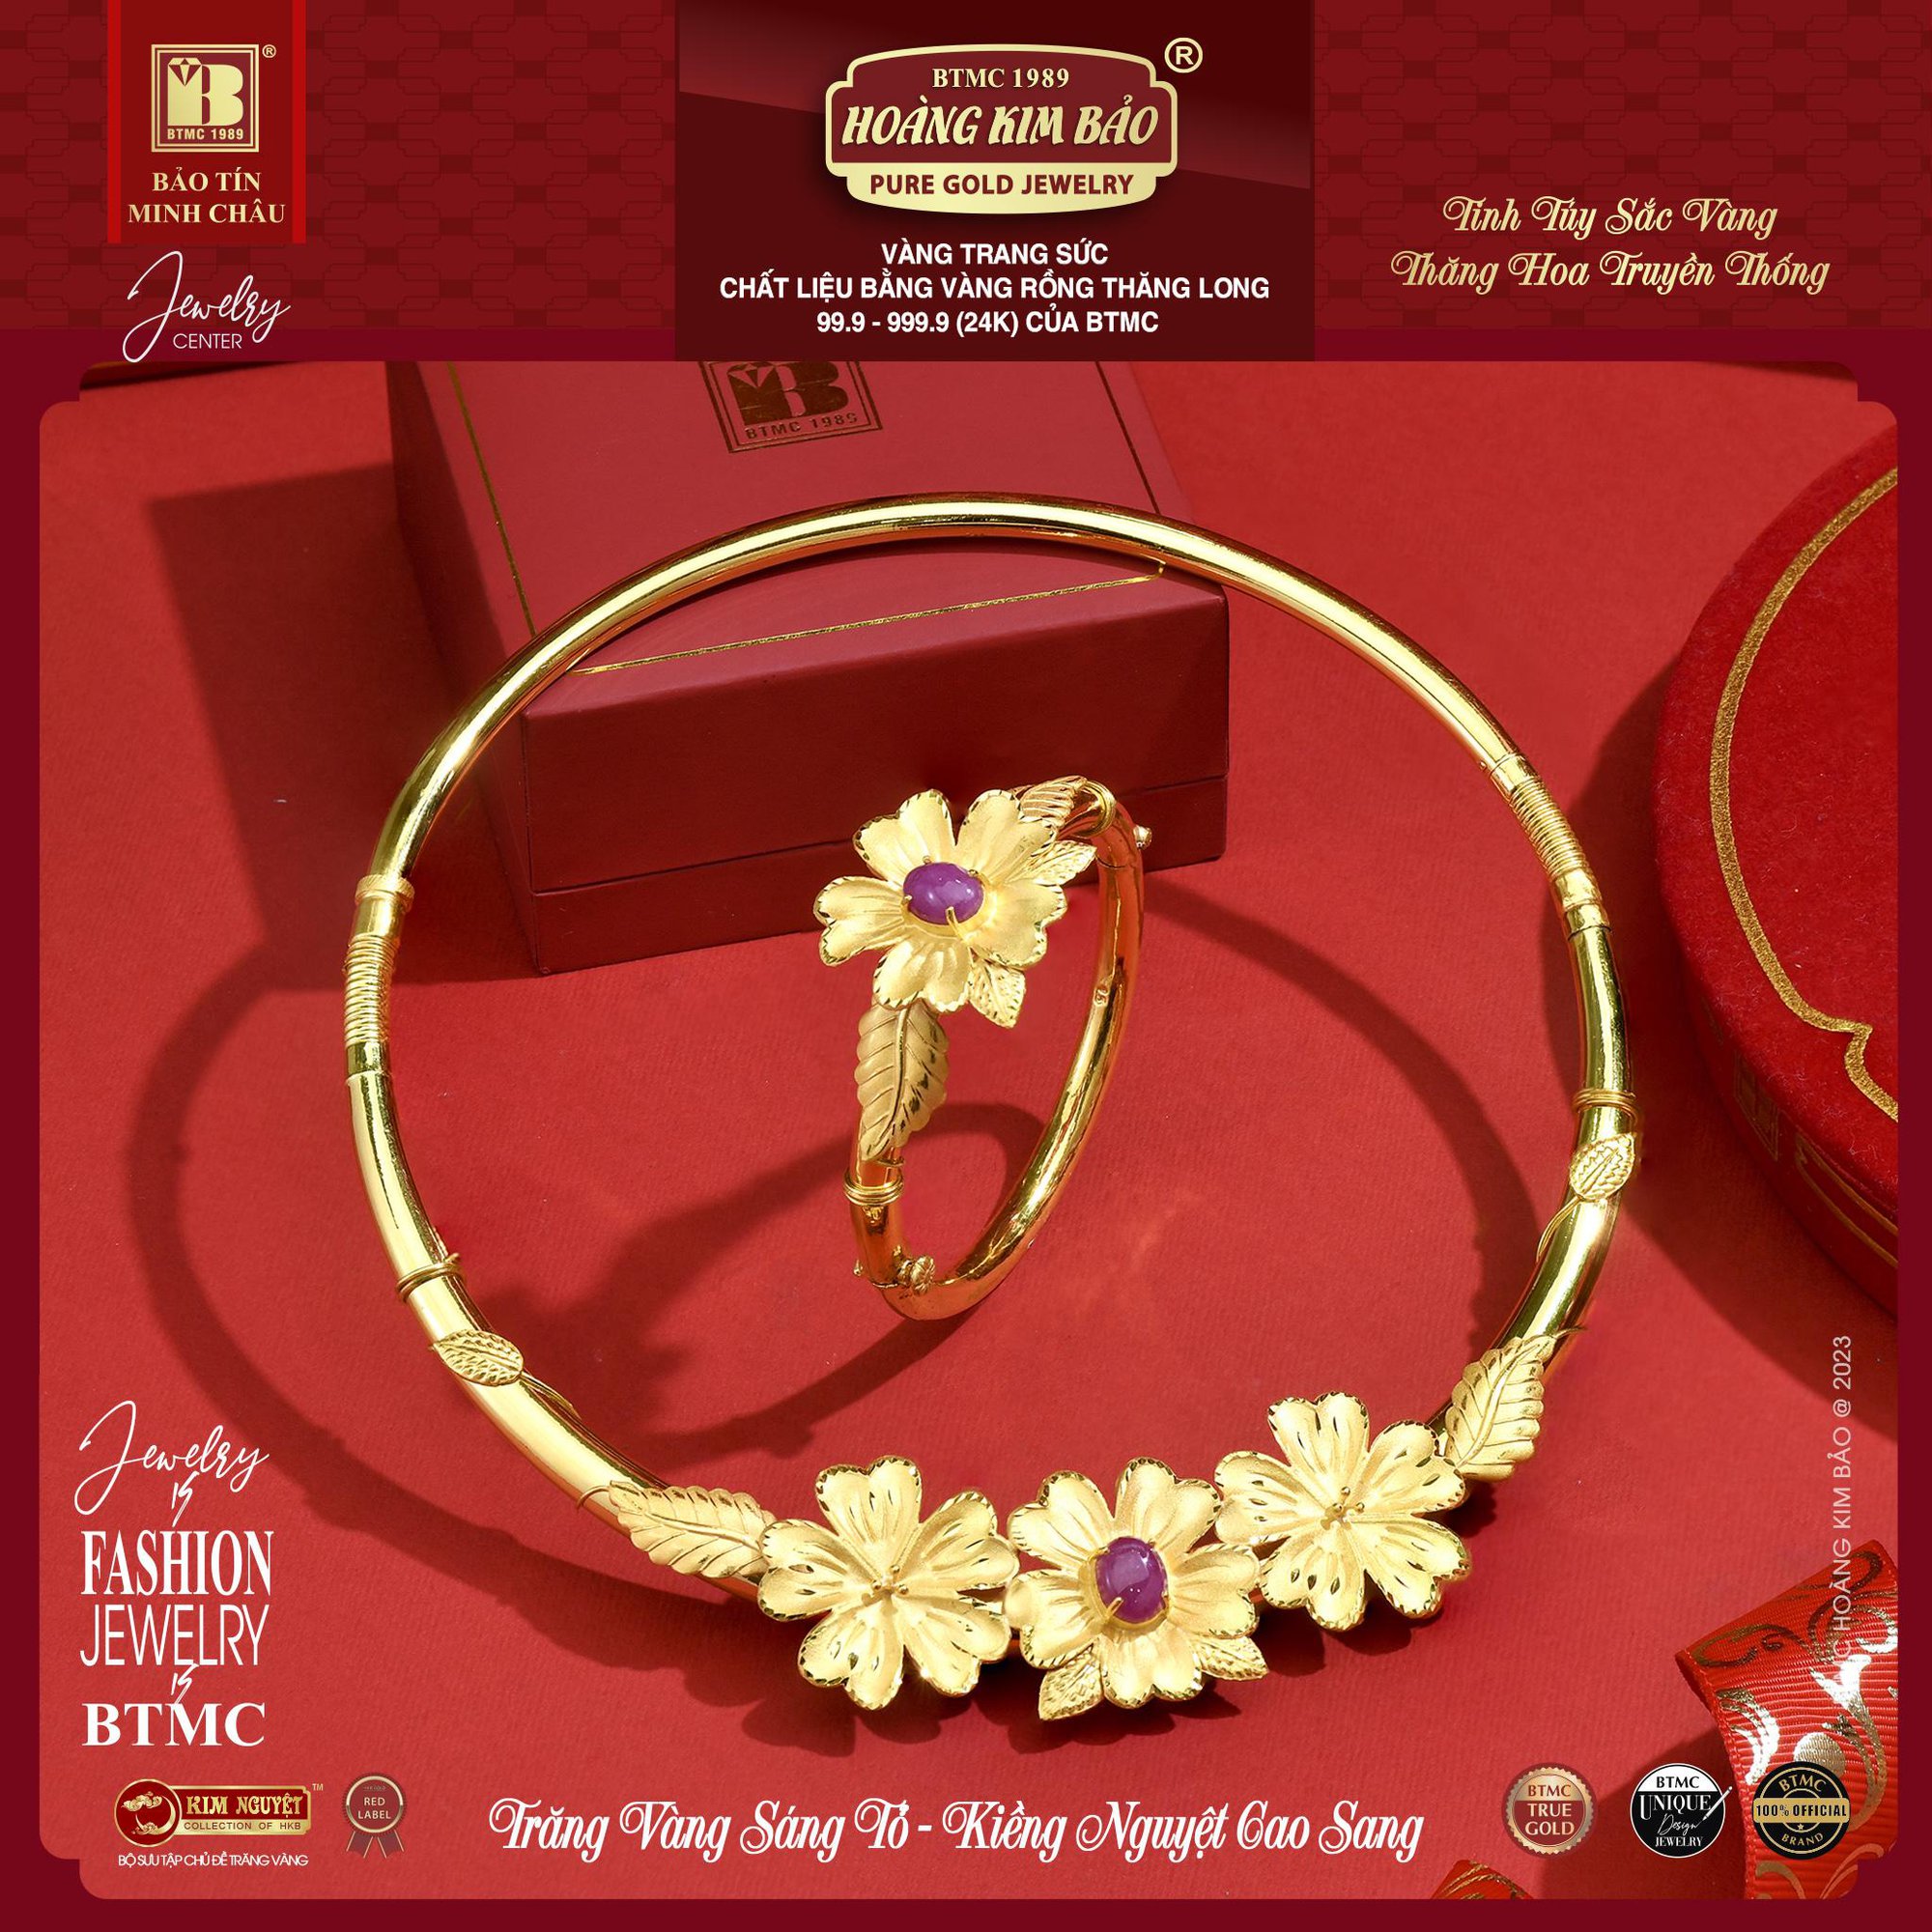 Tận hưởng cơ hội “mua trang sức cưới vàng trúng quà sang” đợt 2 từ Bảo Tín Minh Châu - Ảnh 2.